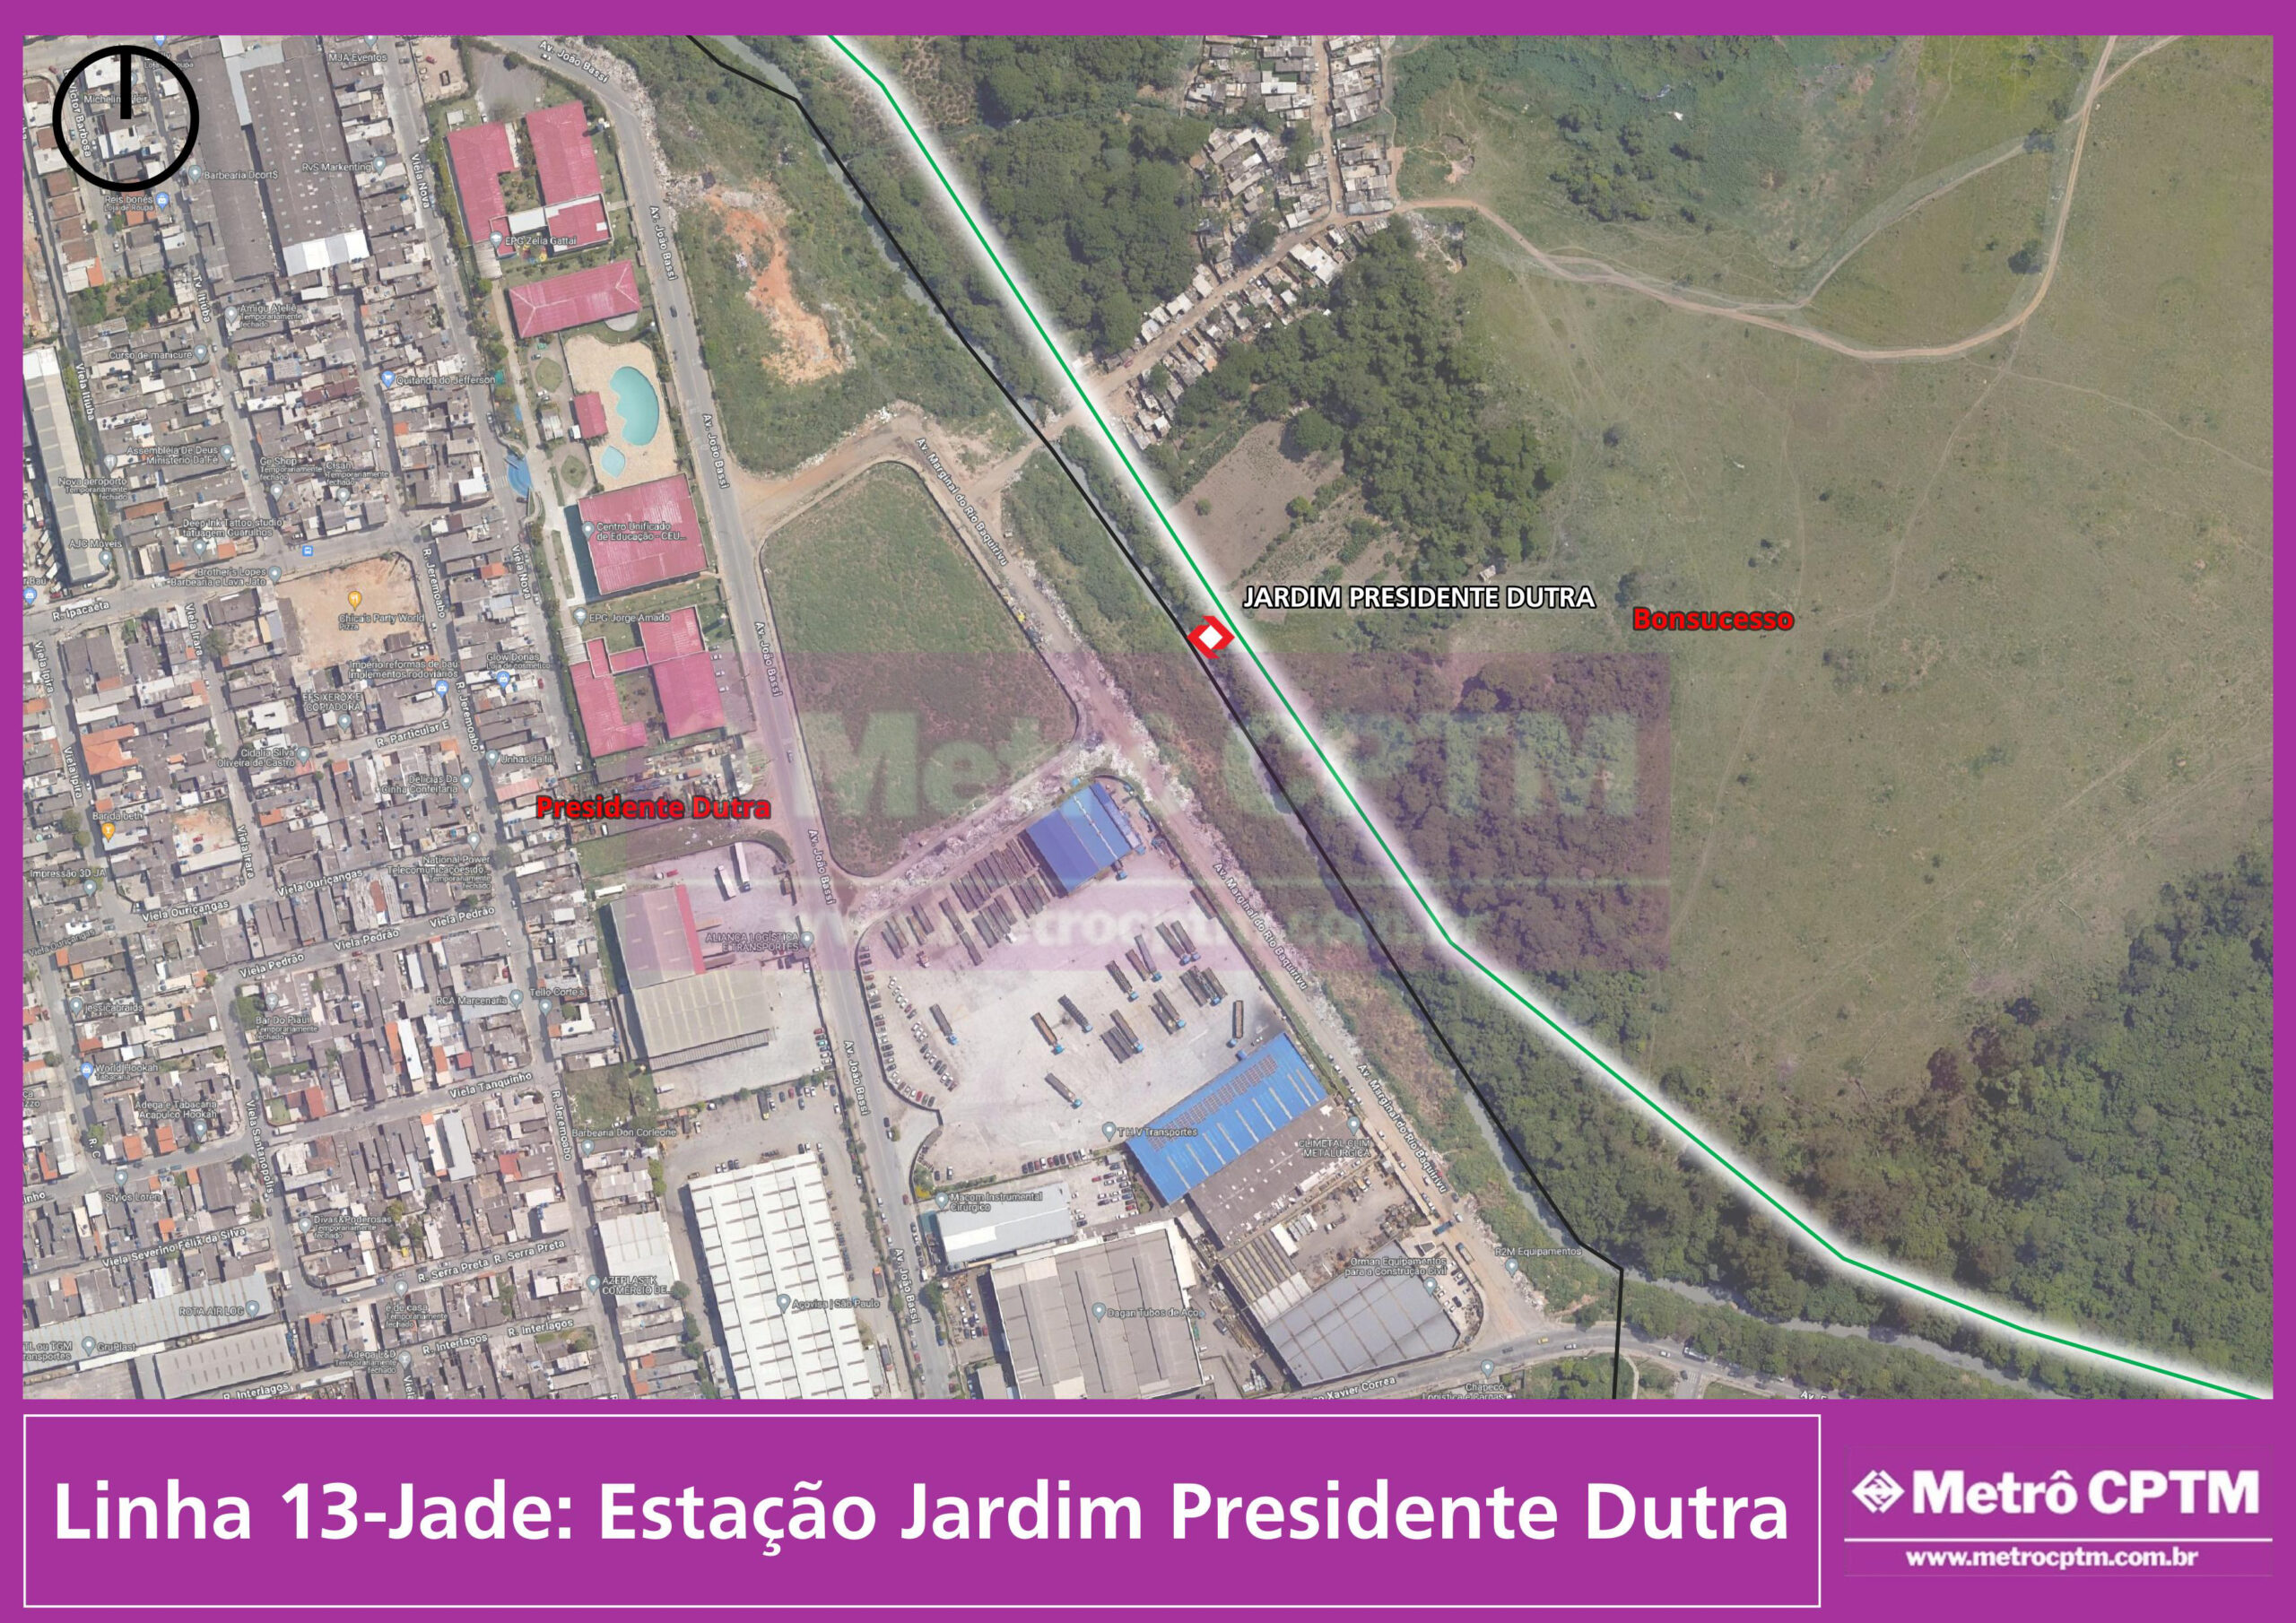 Estação Jardim Presidente Dutra (Jean Carlos)